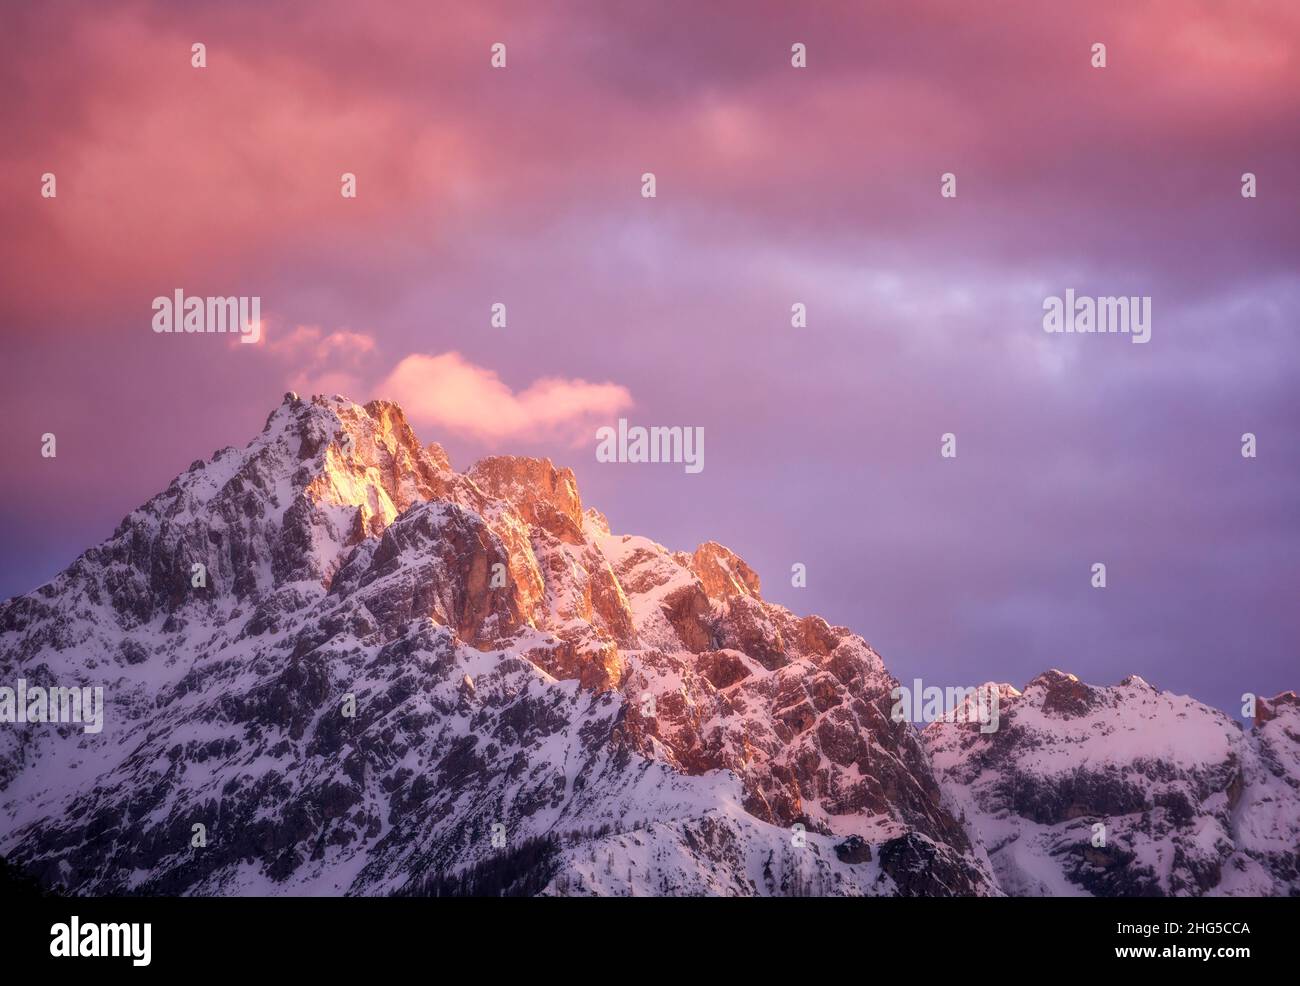 Magnifiques sommets de montagne dans la neige et le ciel violet avec des nuages roses Banque D'Images